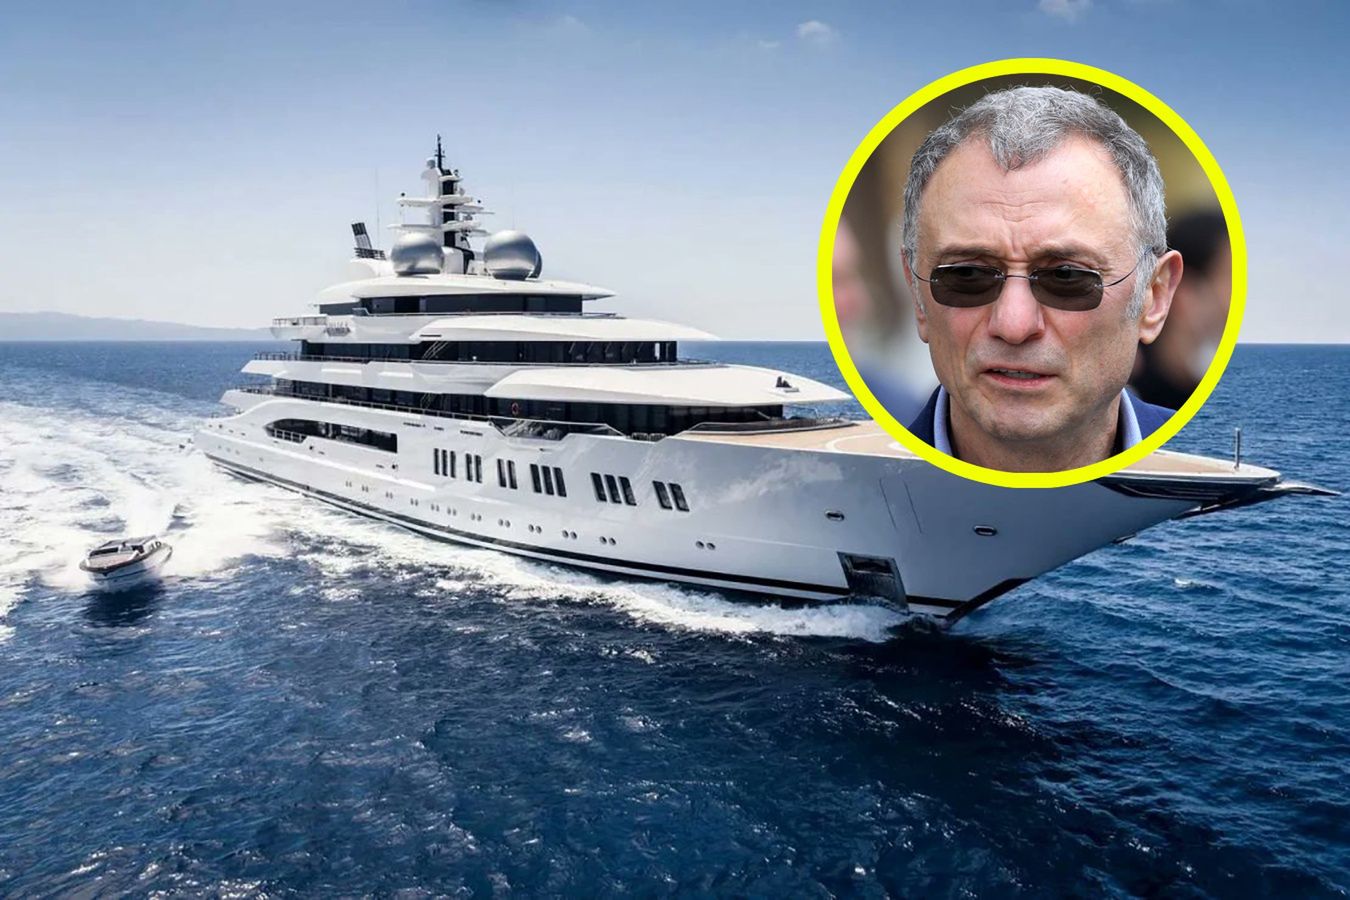 Jacht rosyjskiego oligarchy wyruszył w podróż. Jest warty 325 mln dolarów